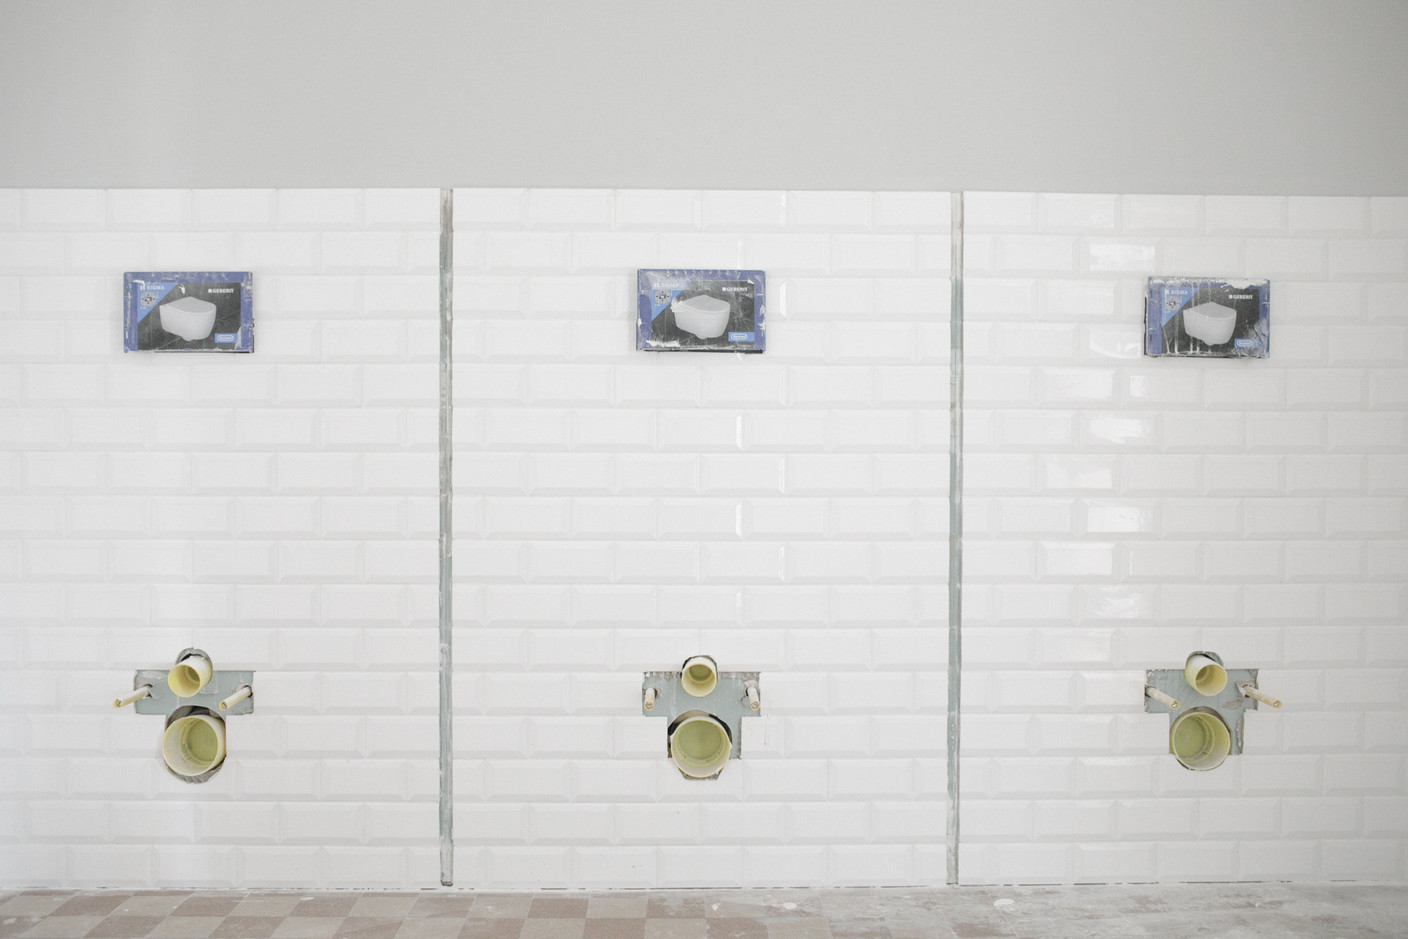 L’esprit industriel se retrouve jusque dans les toilettes avec ce choix de carrelage de type «métro parisien». (Photo: Matic Zorman/Maison Moderne)